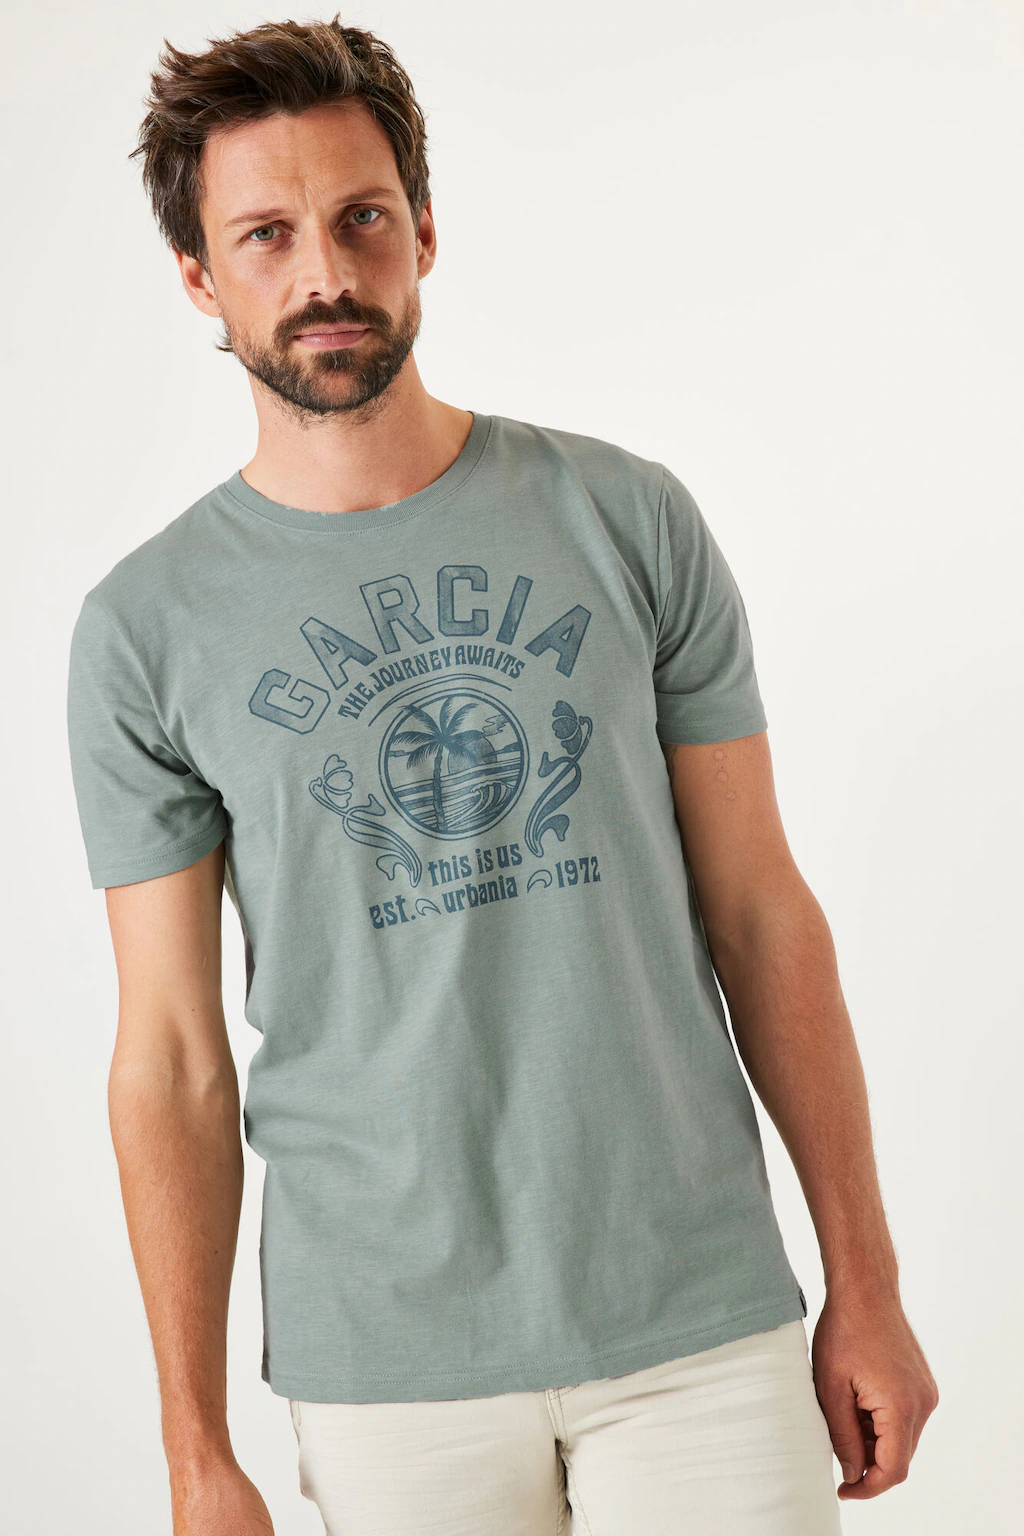 Garcia T-Shirt "Regular fit" günstig online kaufen